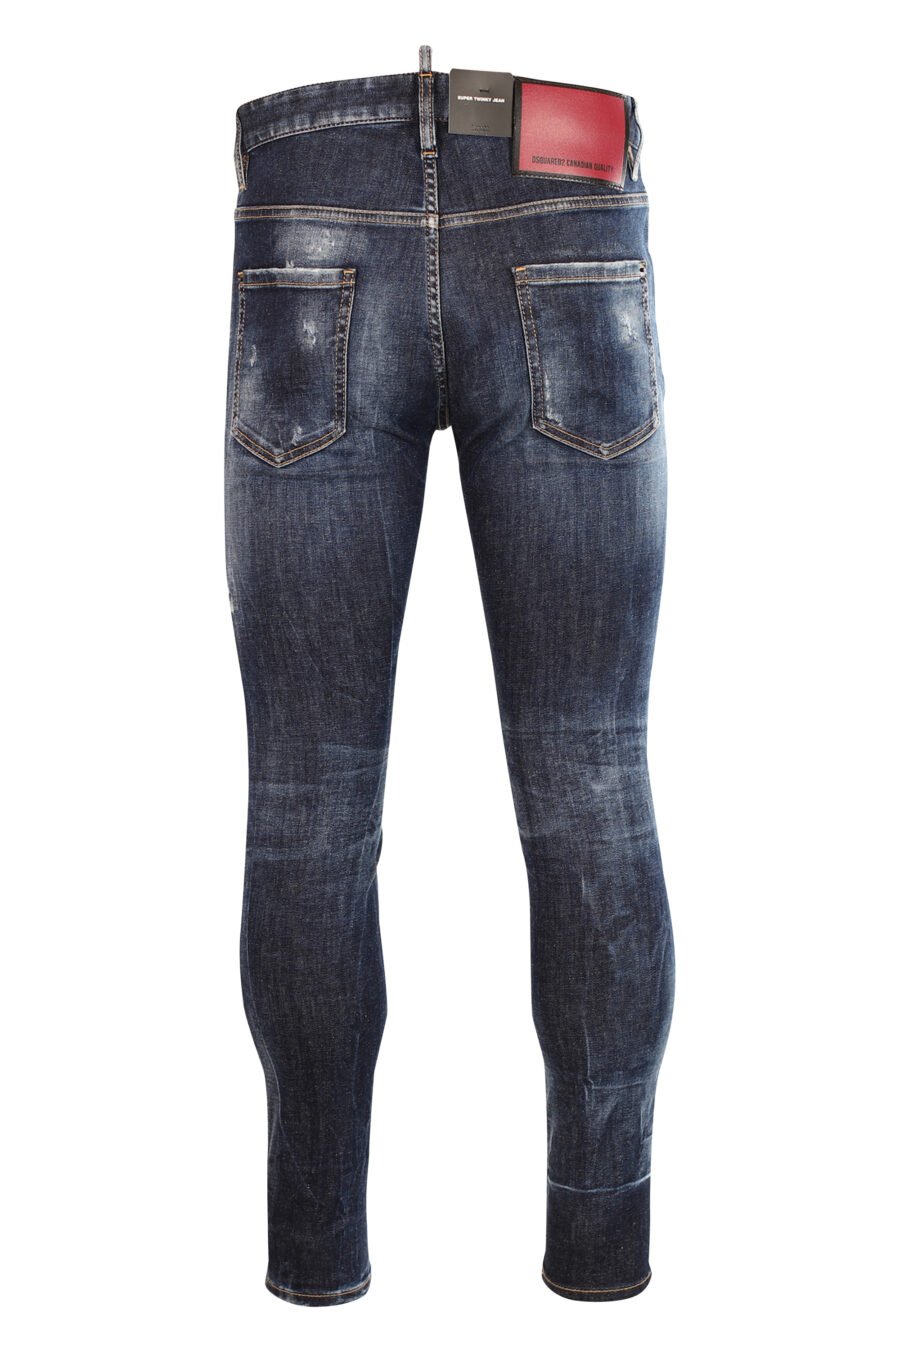 Jeans "super twinkey jean" bleu avec déchirures - 8052134966914 3